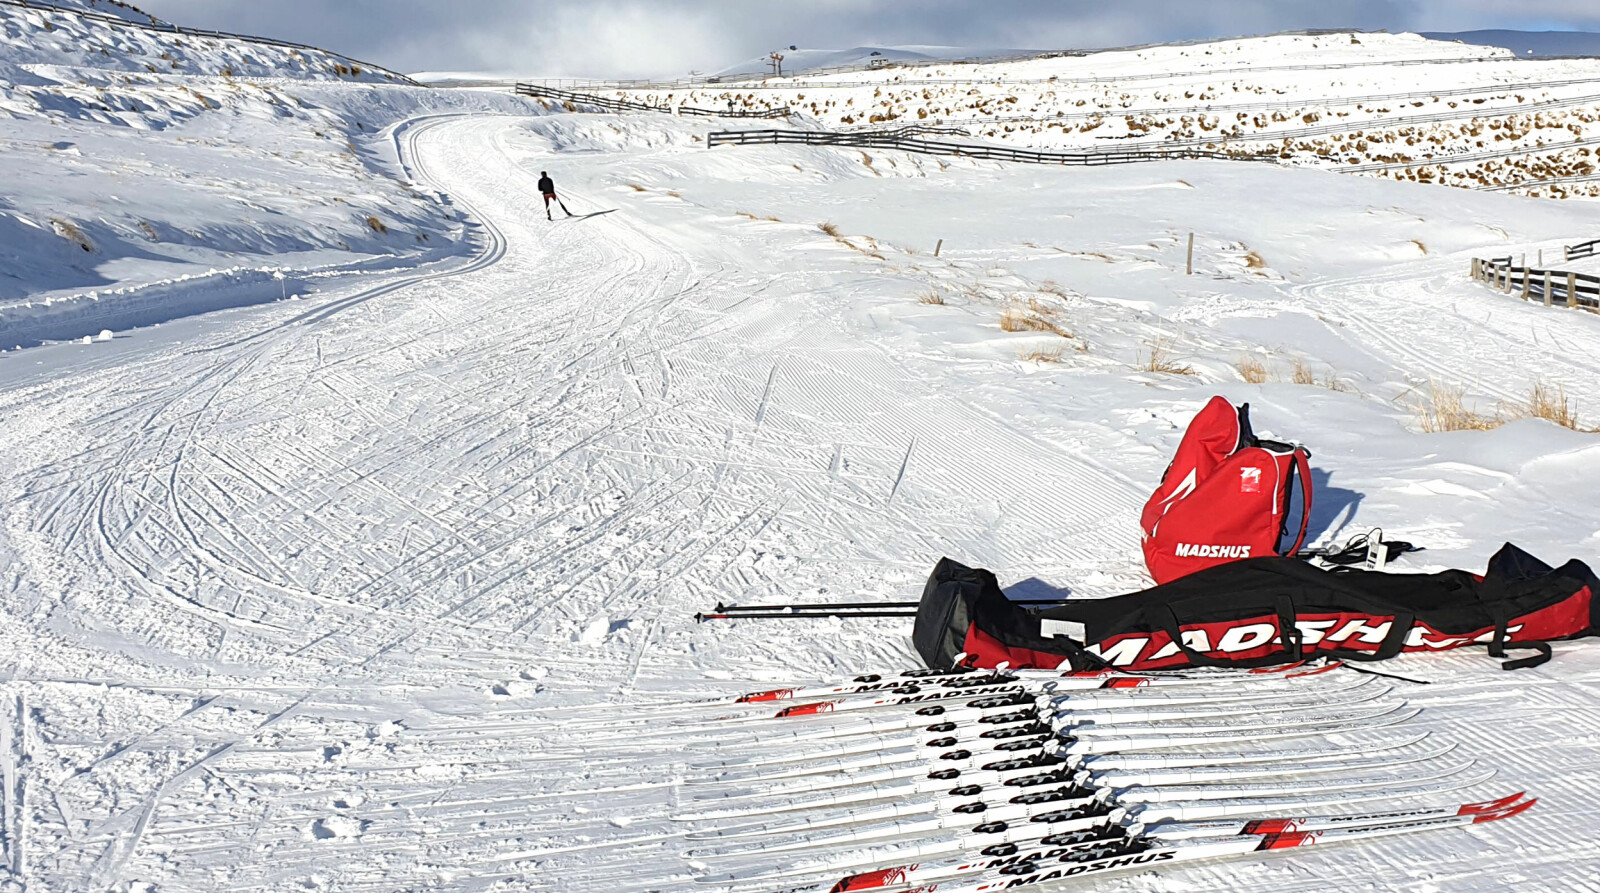 <b>OFRET SOMMERFERIEN:</b> Madshus sine utviklerne var borte i nesten tre uker i sommer for å teste nye ski på New Zea­land under vinterlige forhold.  